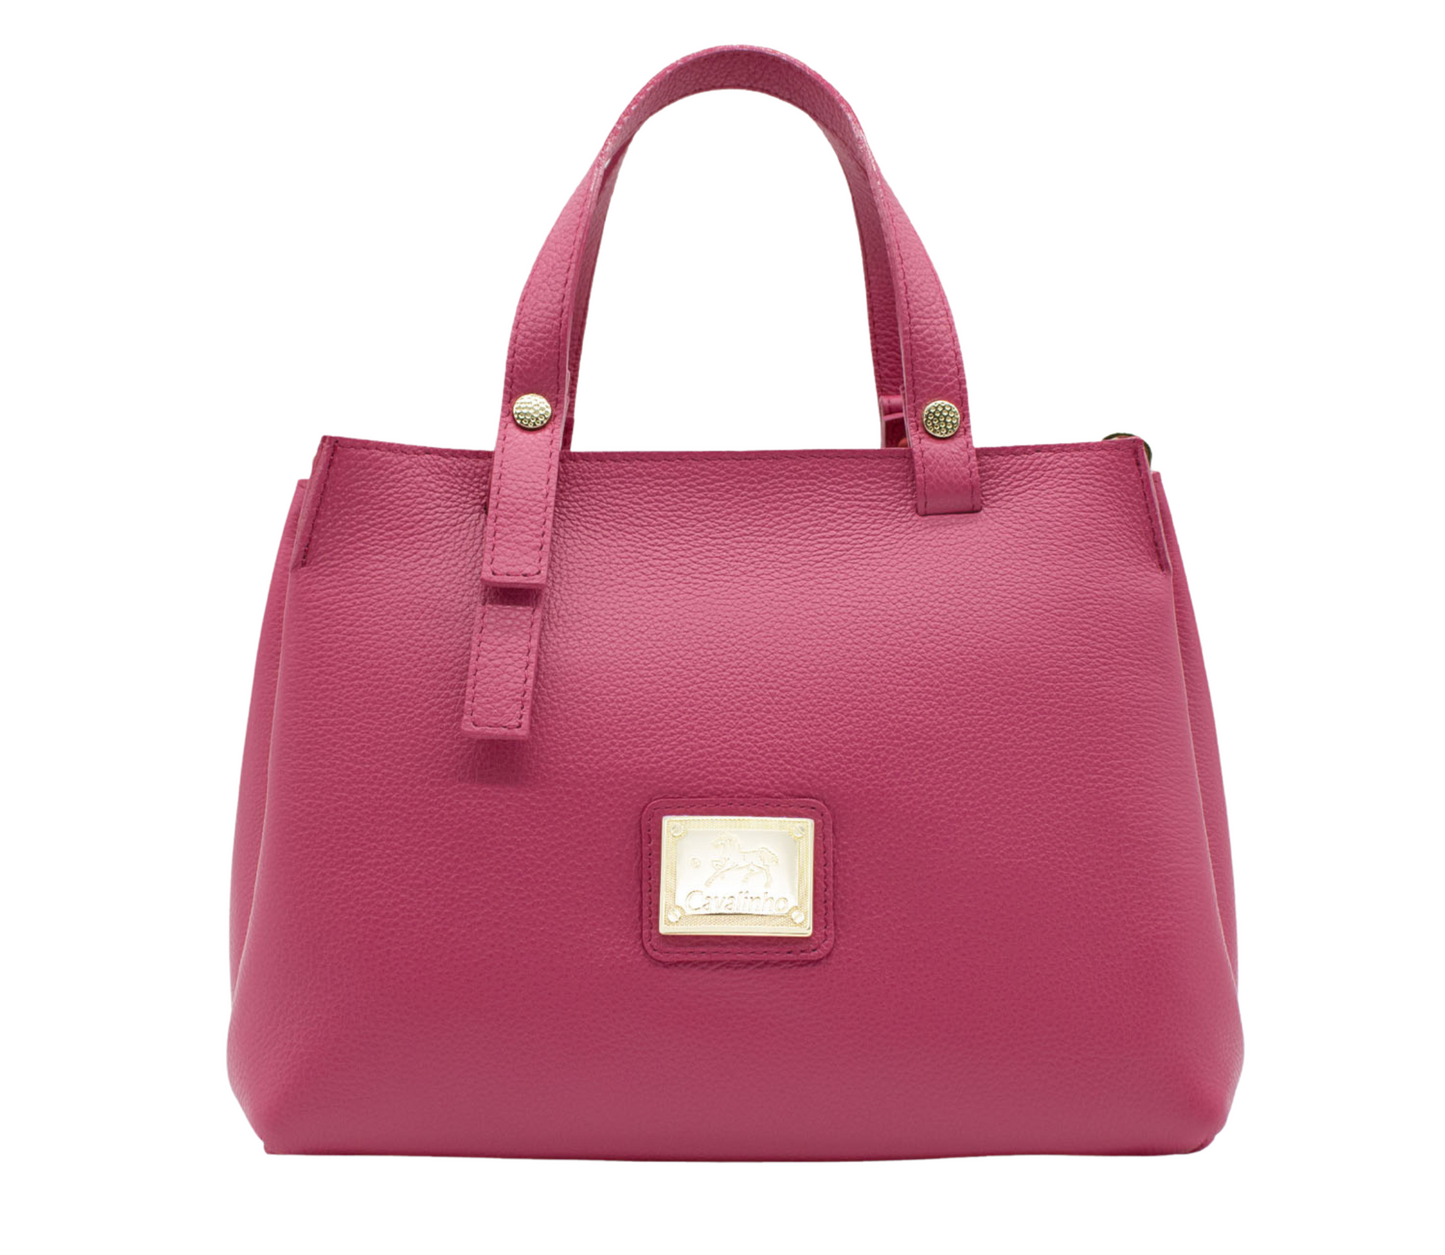 Cavalinho Muse Leather Handbag - HotPink - 18300490.18_P01